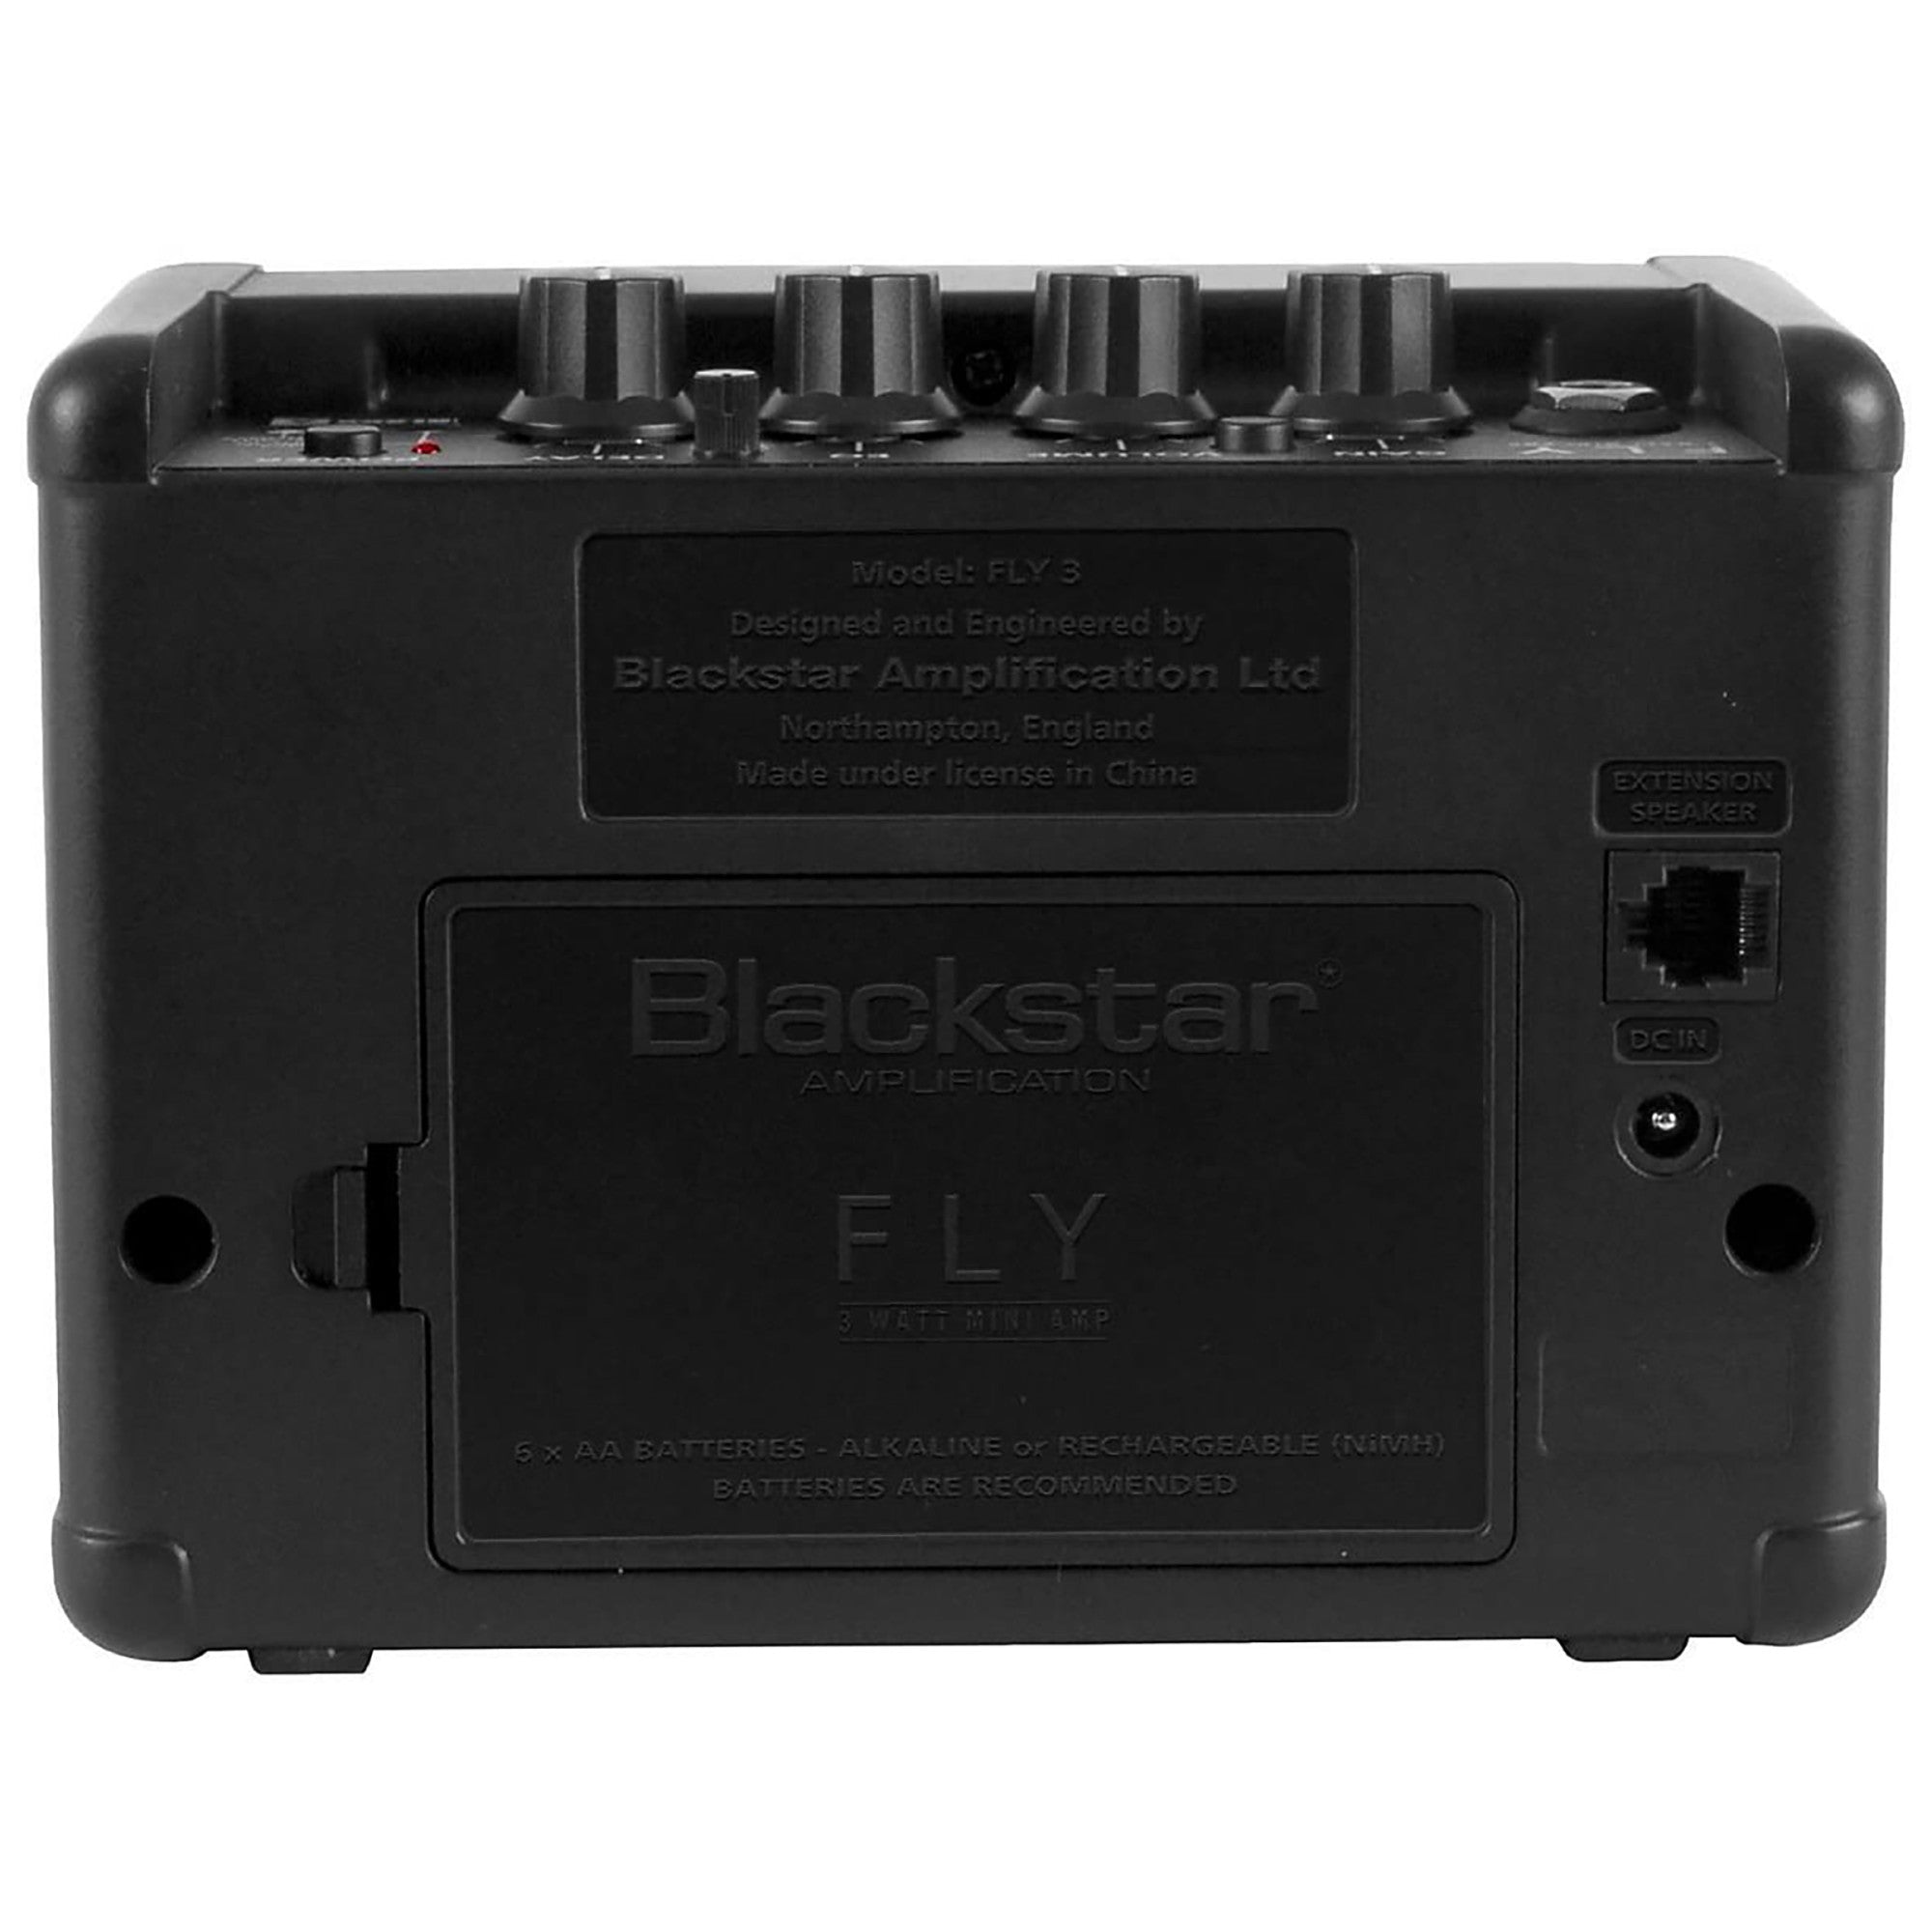 Blackstar, Blackstar FLY 3 Mini Guitar Combo Amplifier